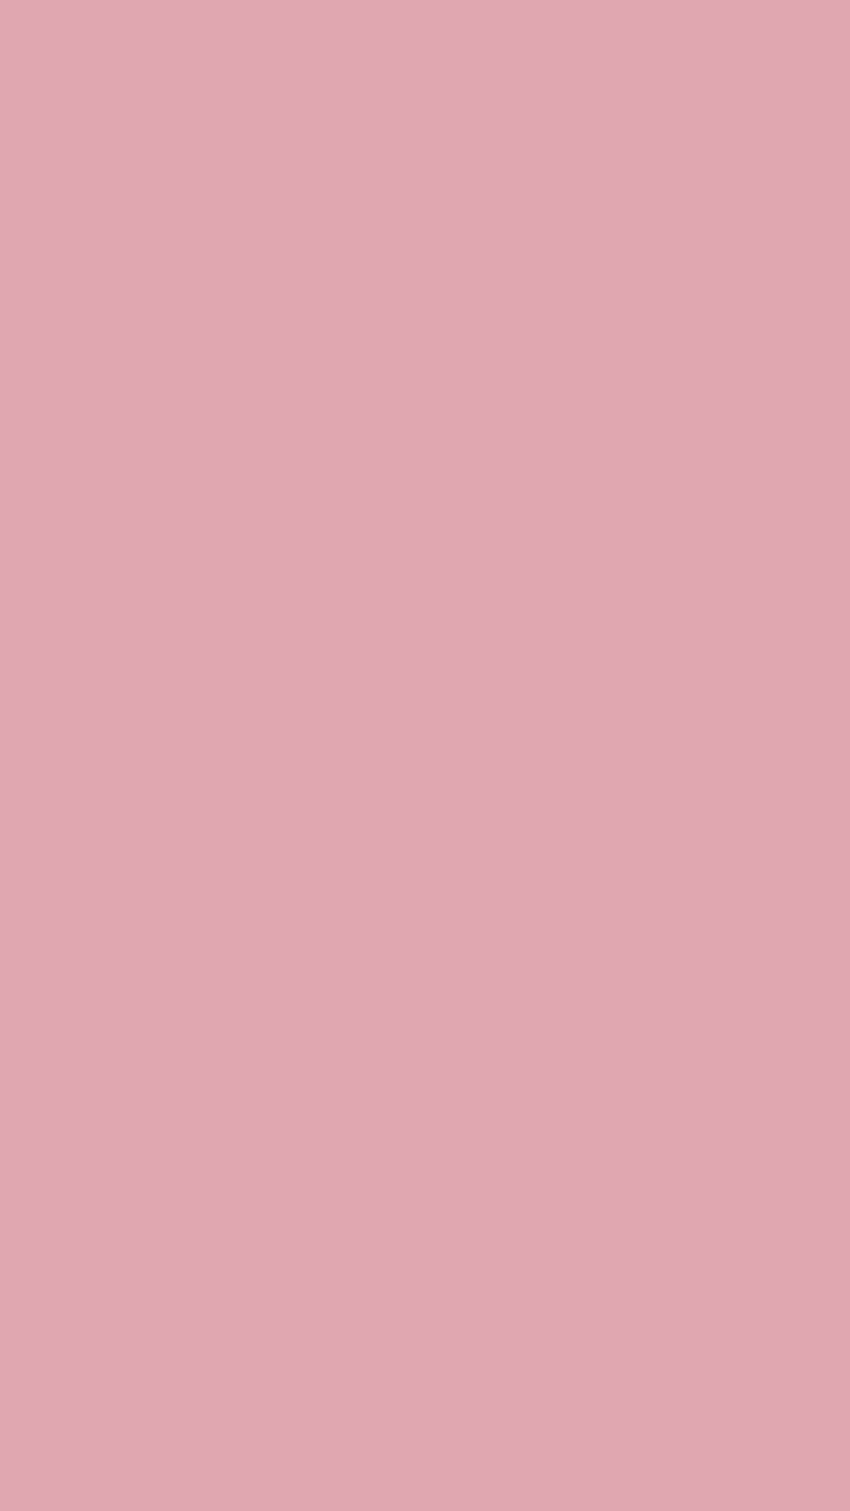 Aesthetic Peach Pink, Peach Plain HD phone wallpaper